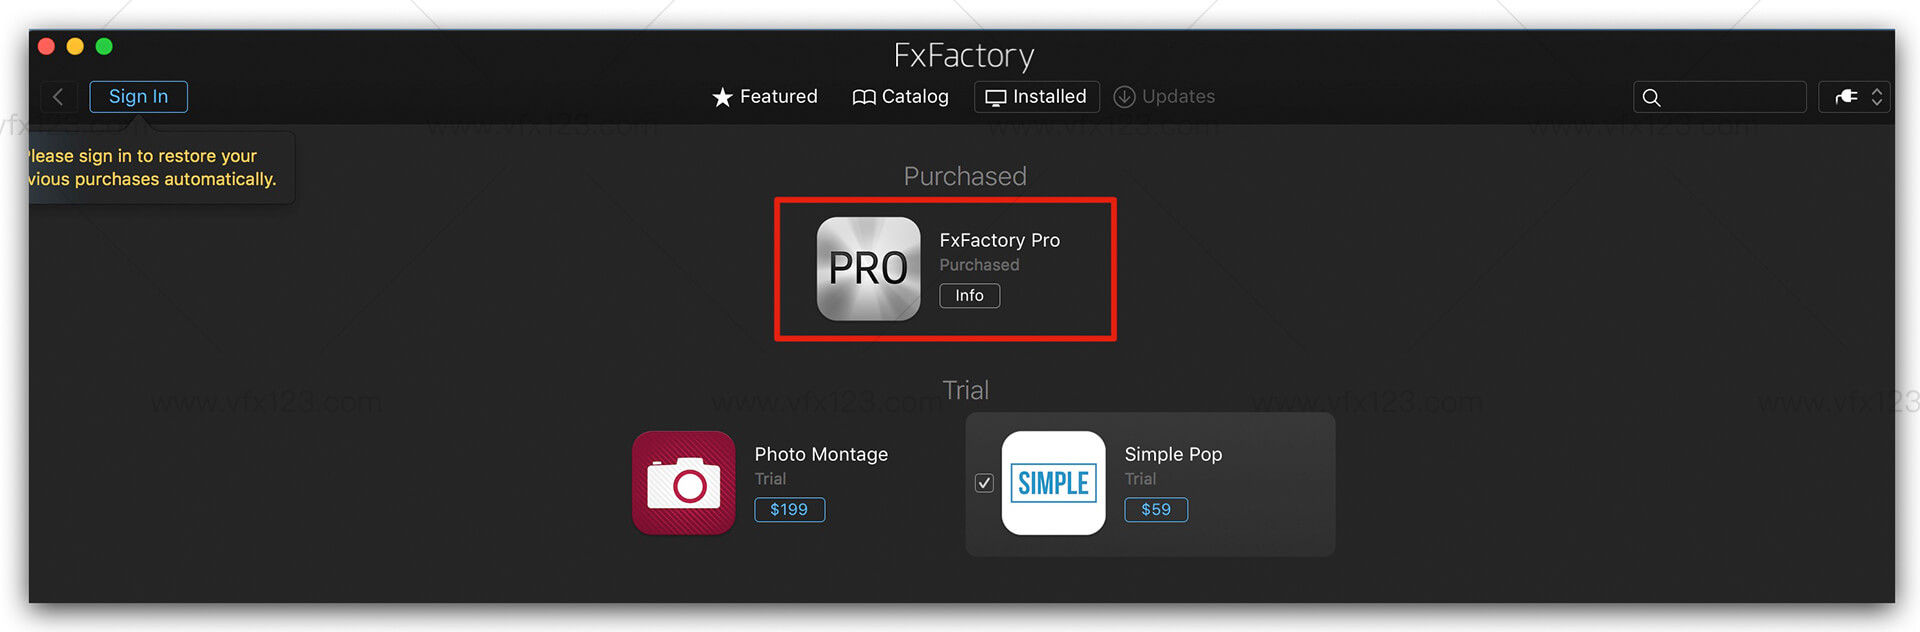 fxfactory pro 7.0.2